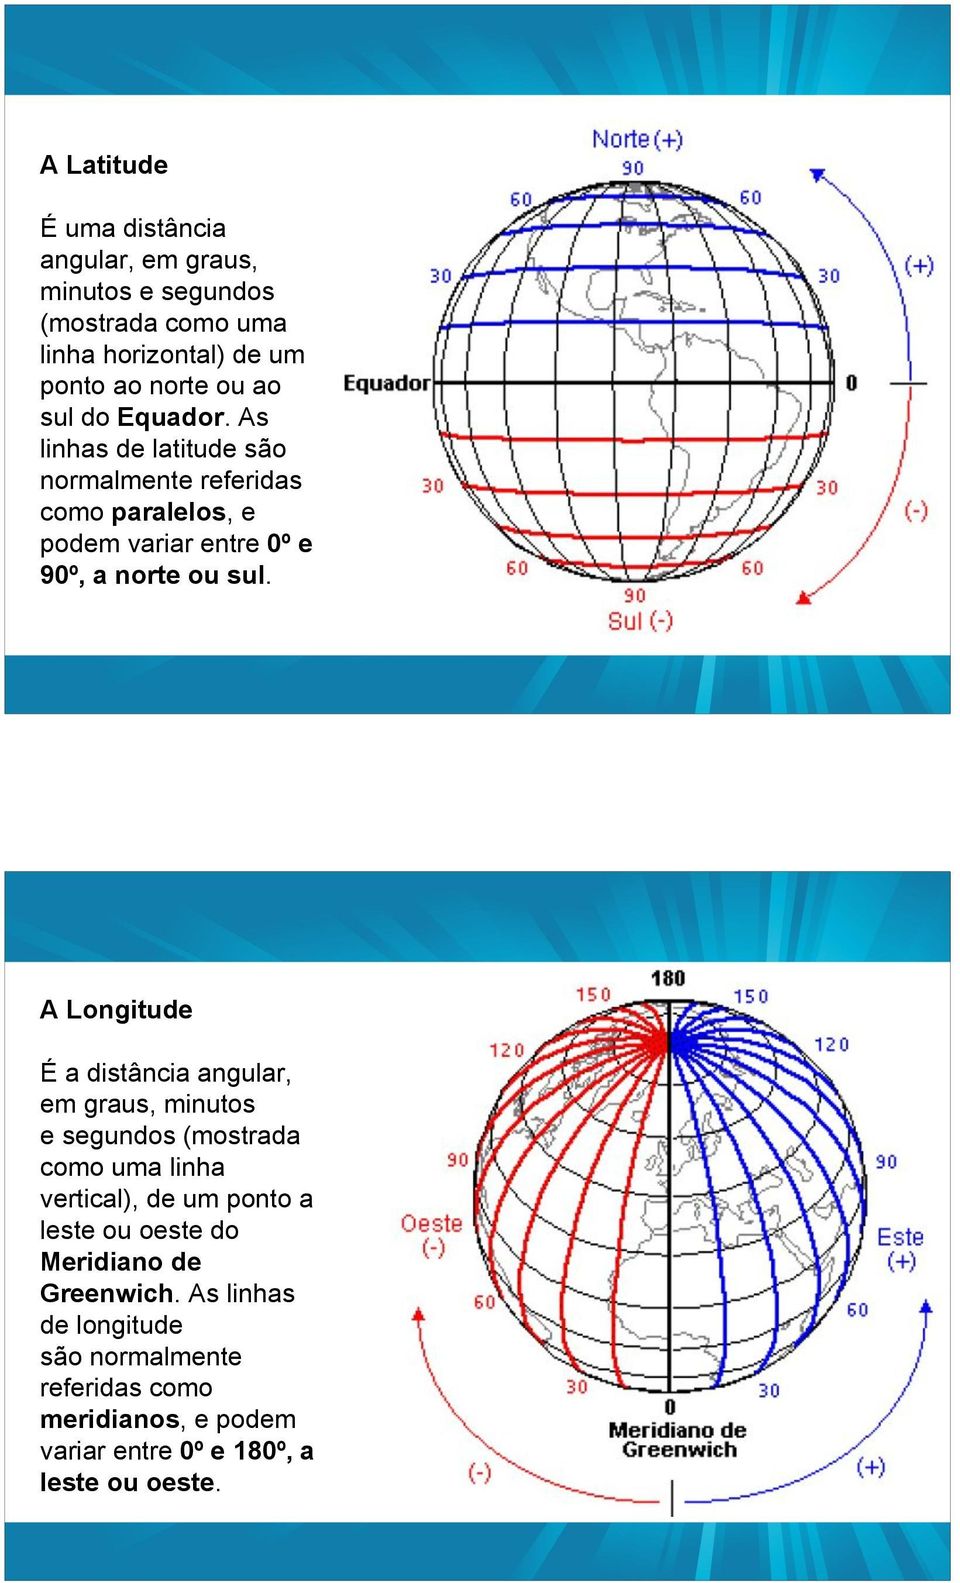 A Longitude É a distância angular, em graus, minutos e segundos (mostrada como uma linha vertical), de um ponto a leste ou oeste do